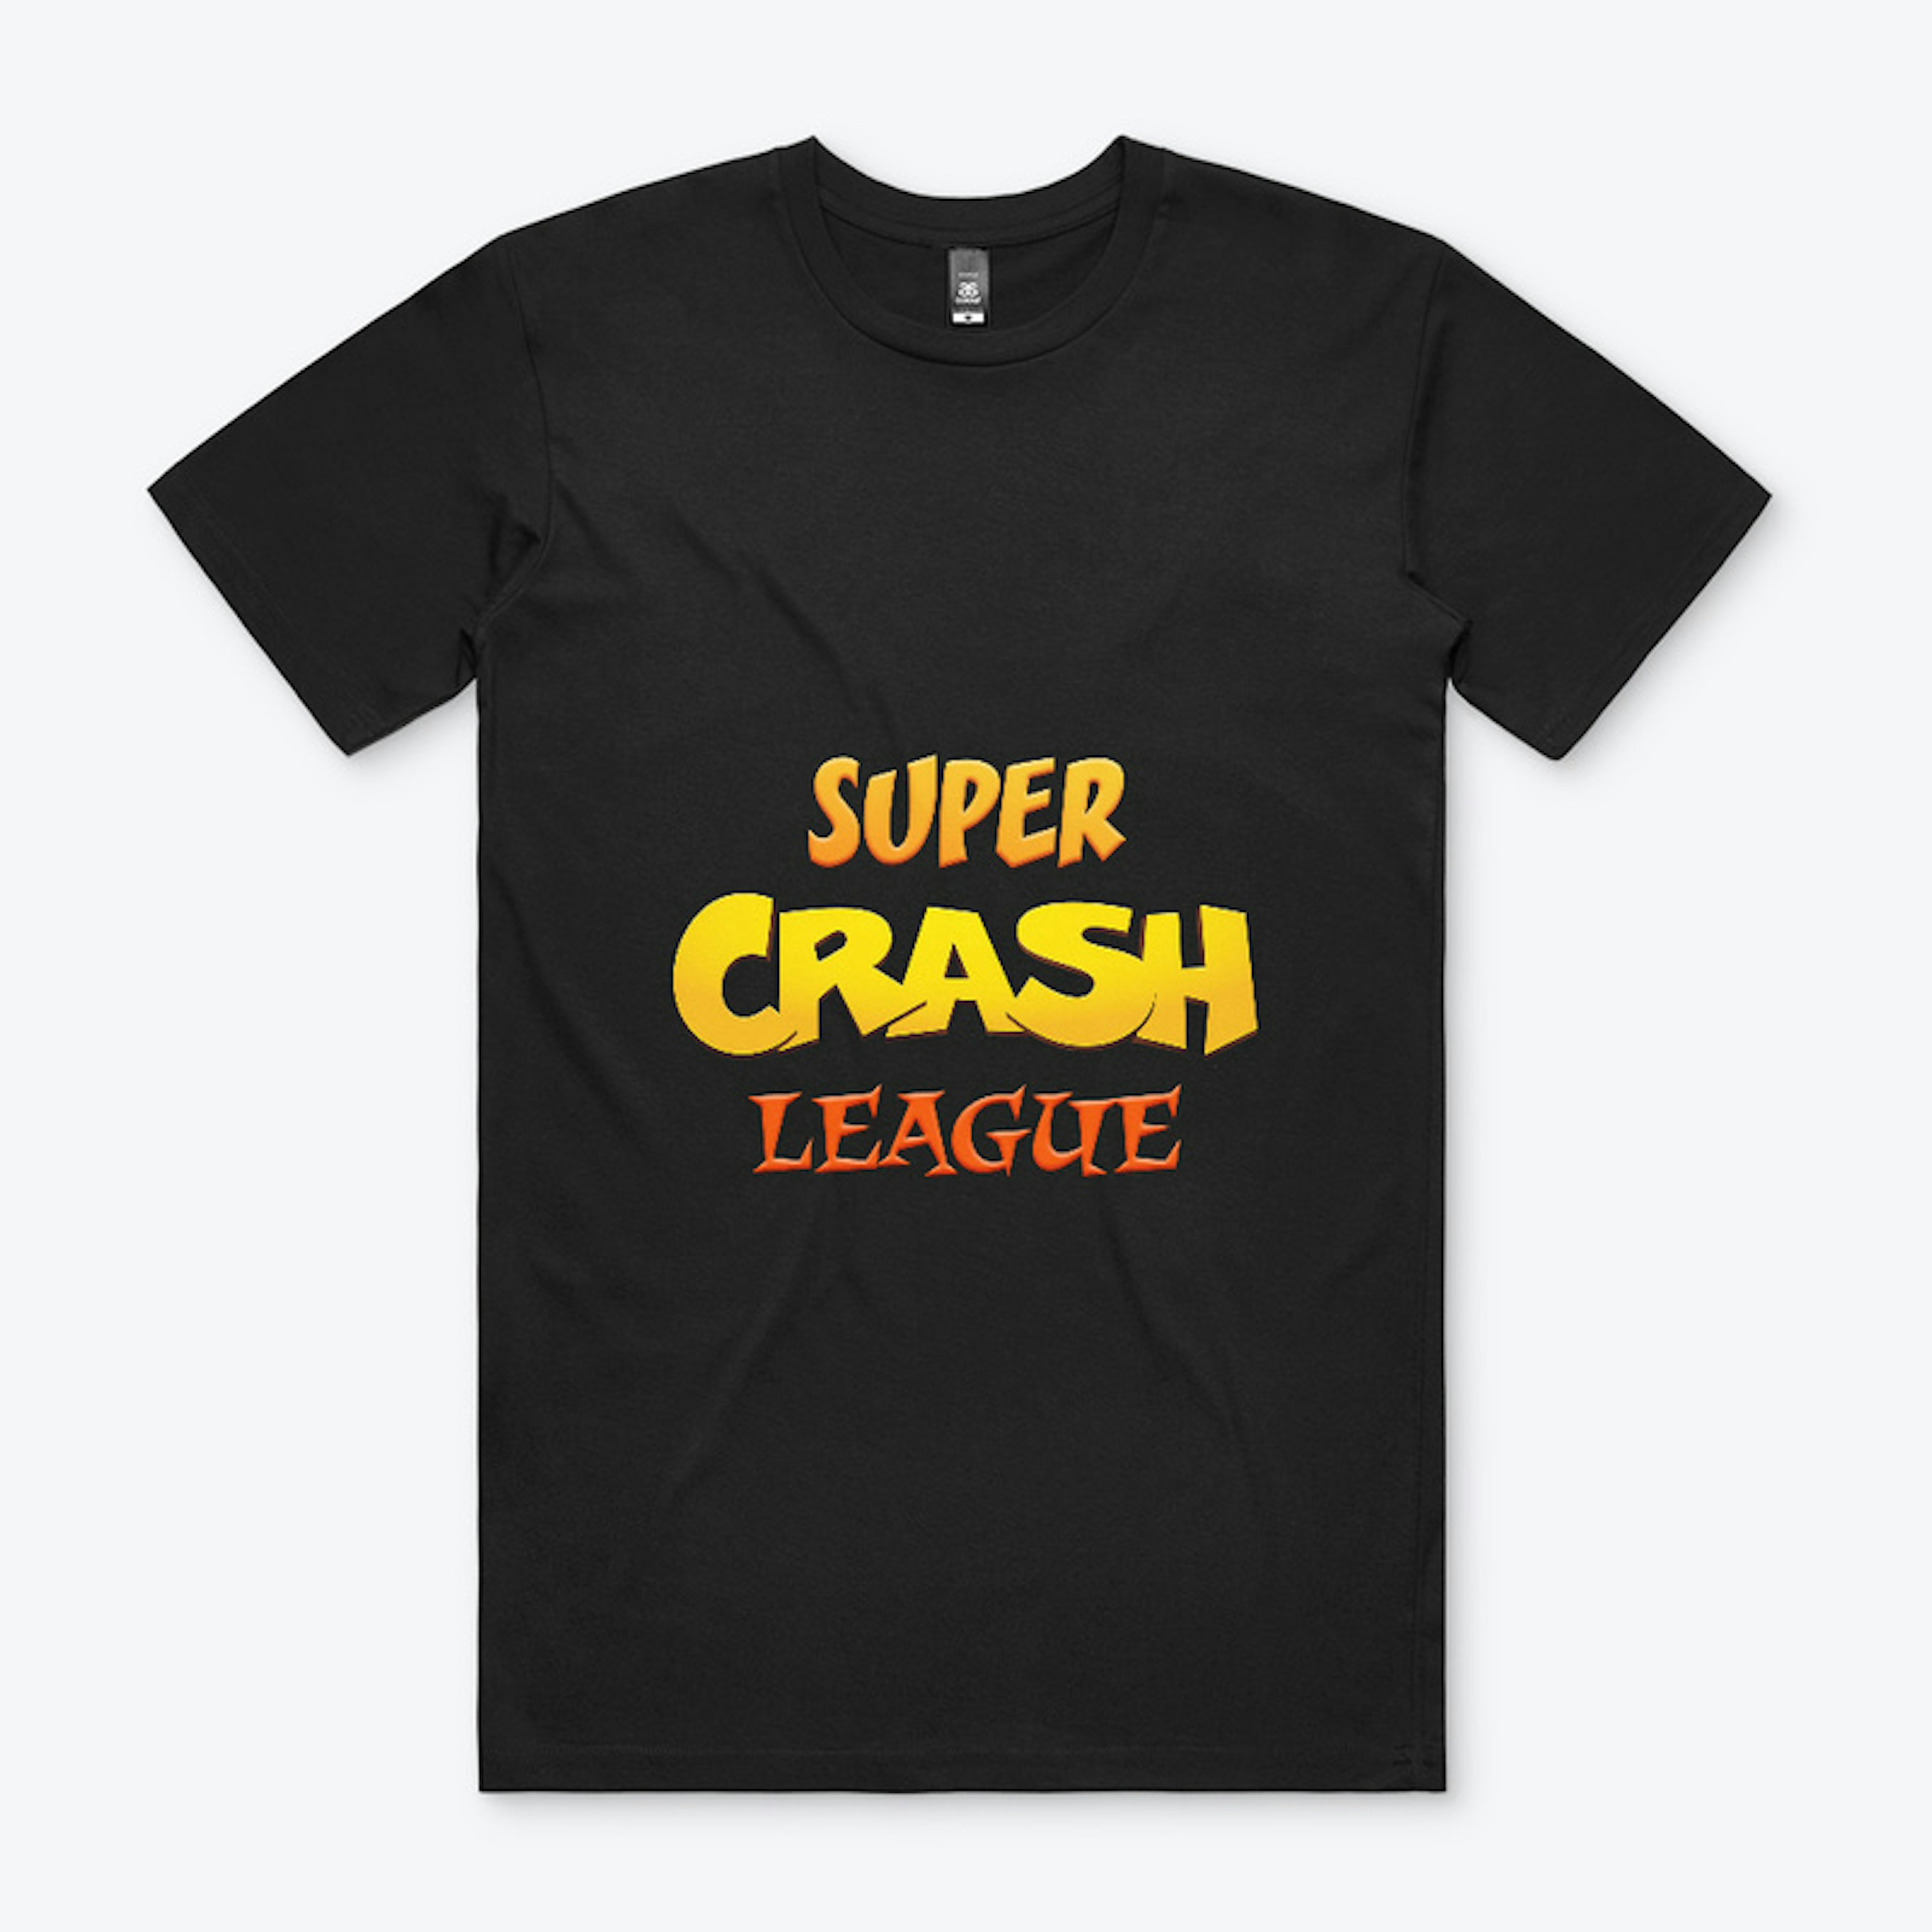 Super Crash League Apparel